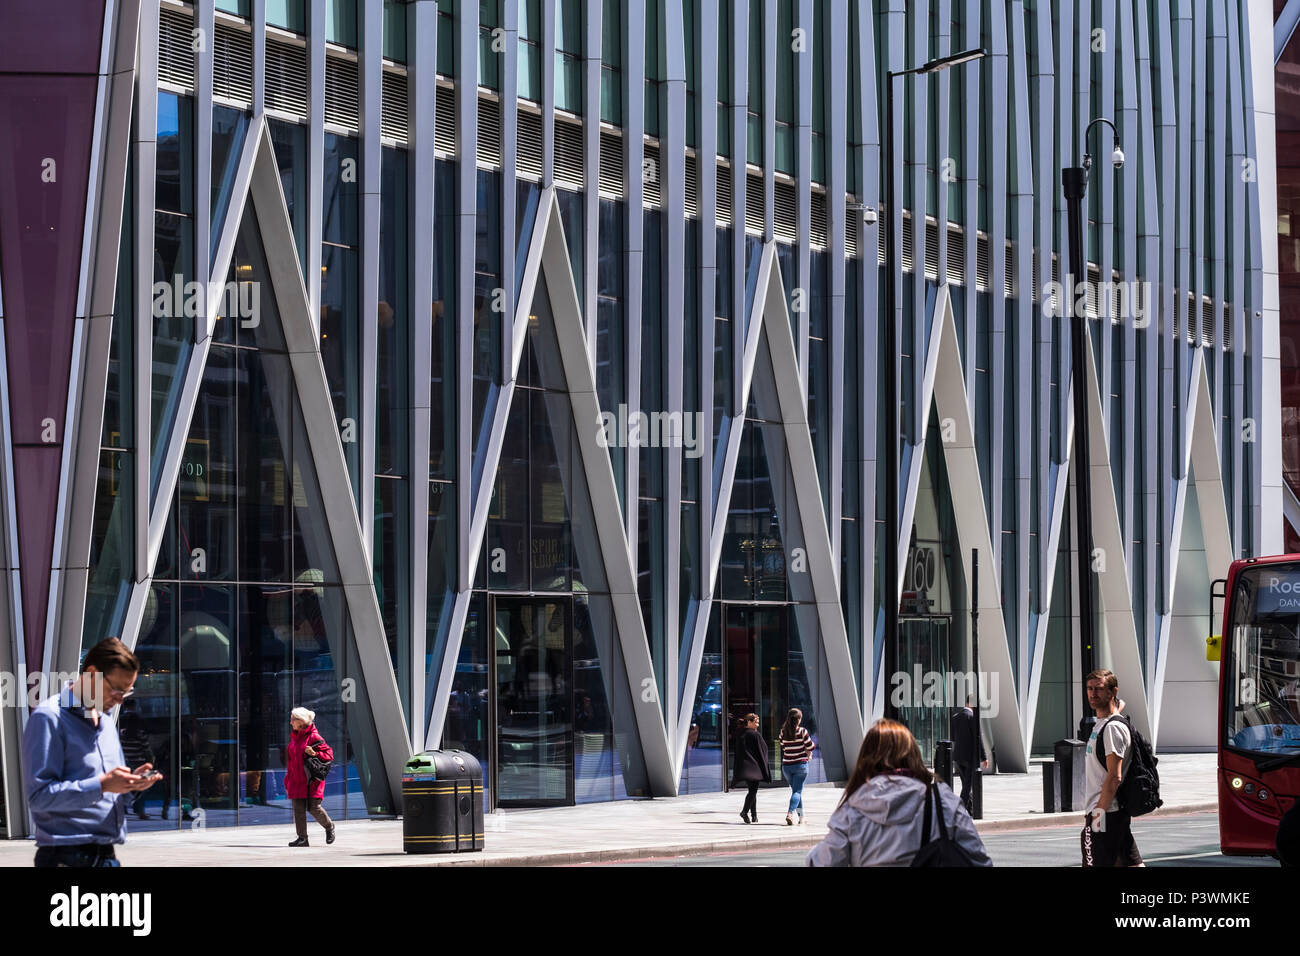 La Victoria, plan de développement à usage mixte 160, rue Victoria, Londres, Angleterre, Royaume-Uni Banque D'Images